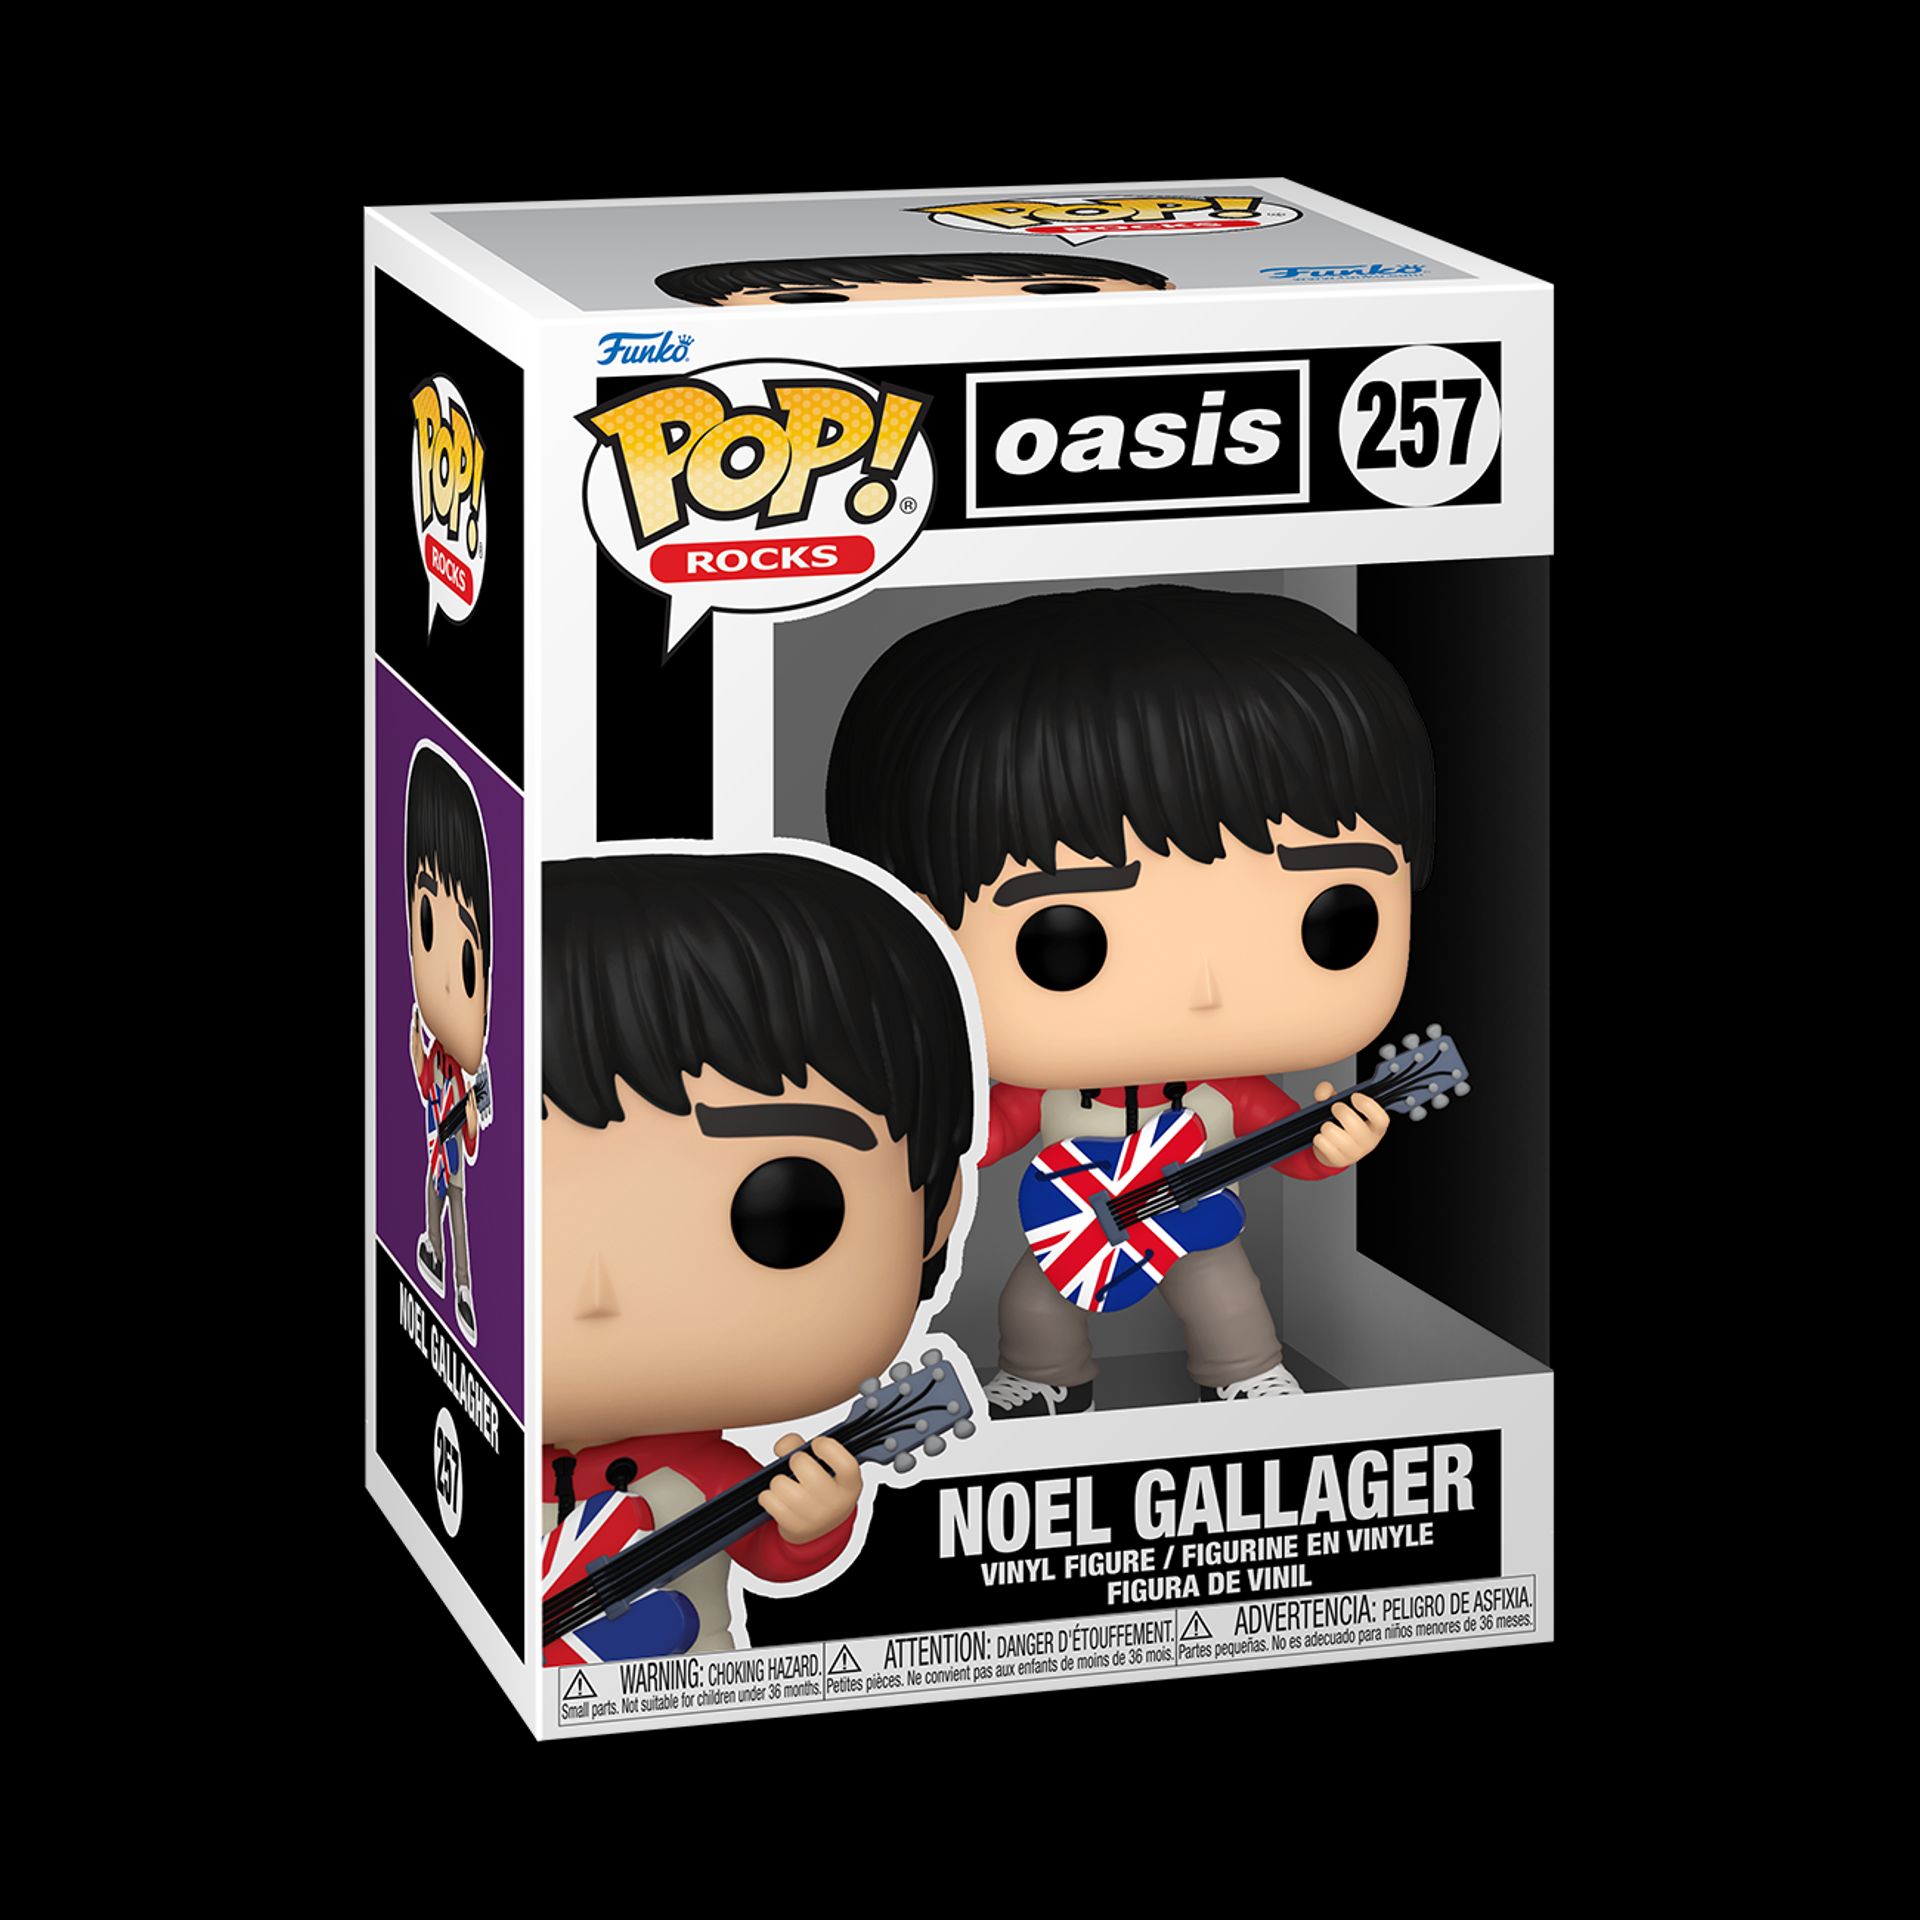 Funko Pop! Rocks: Oasis - Noel Gallagher